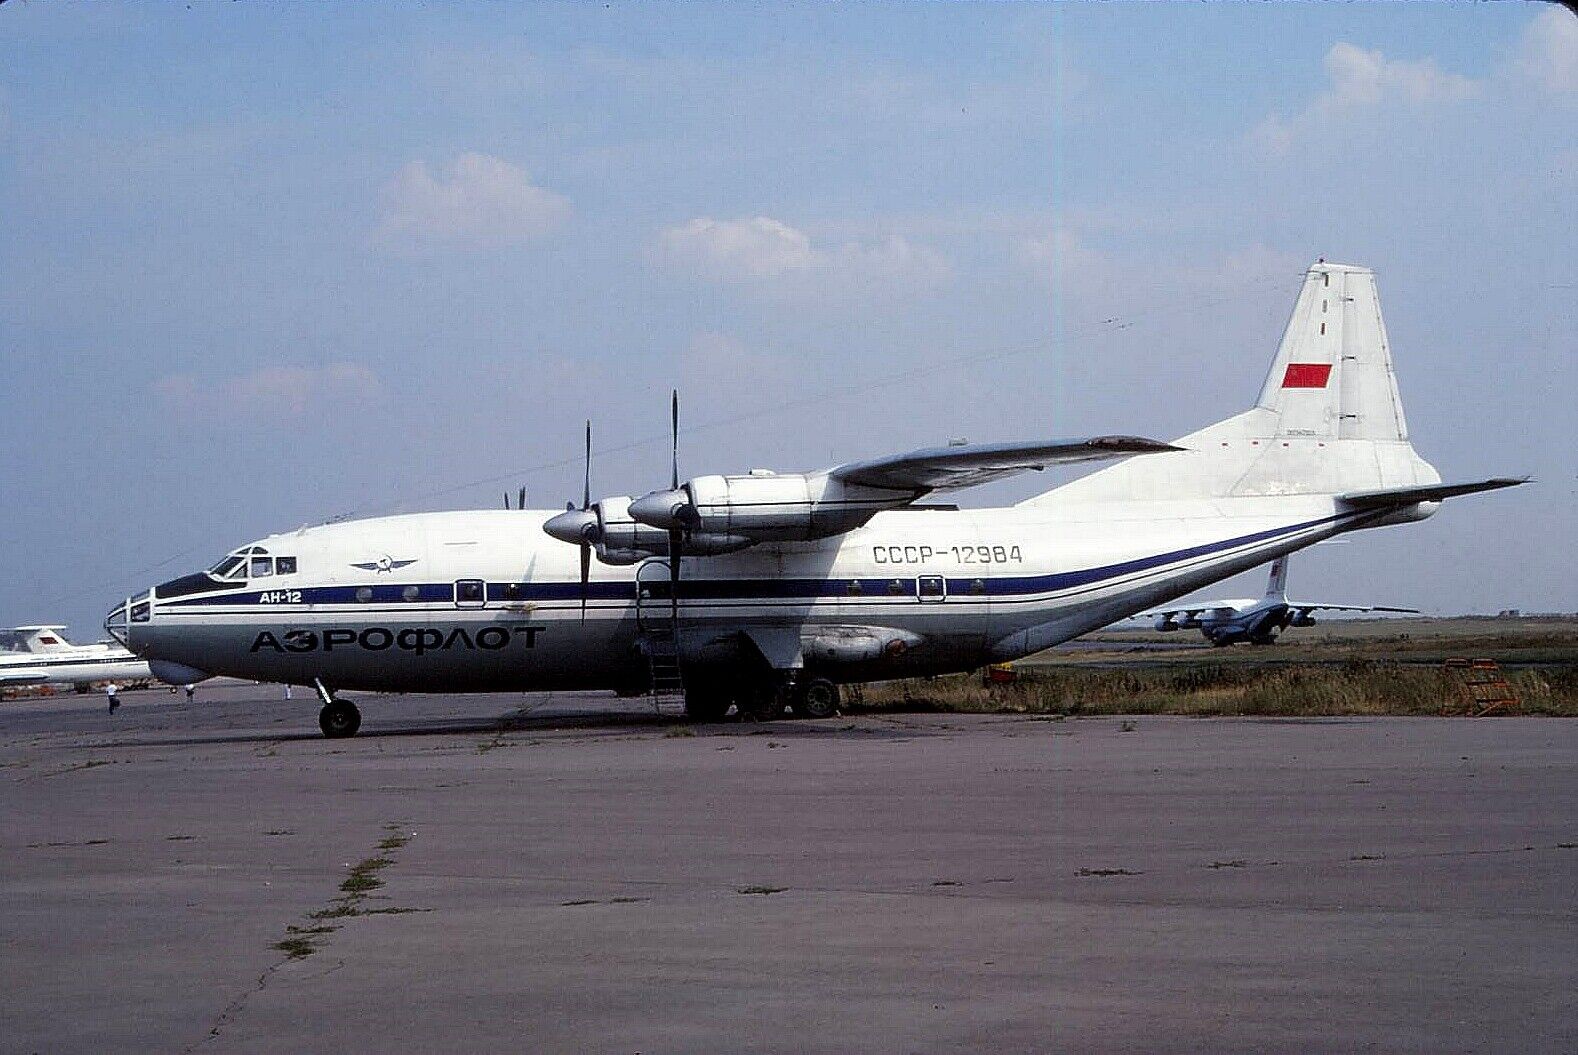 Original colour slide An-12 Cub CCCP-12984 of Aeroflot